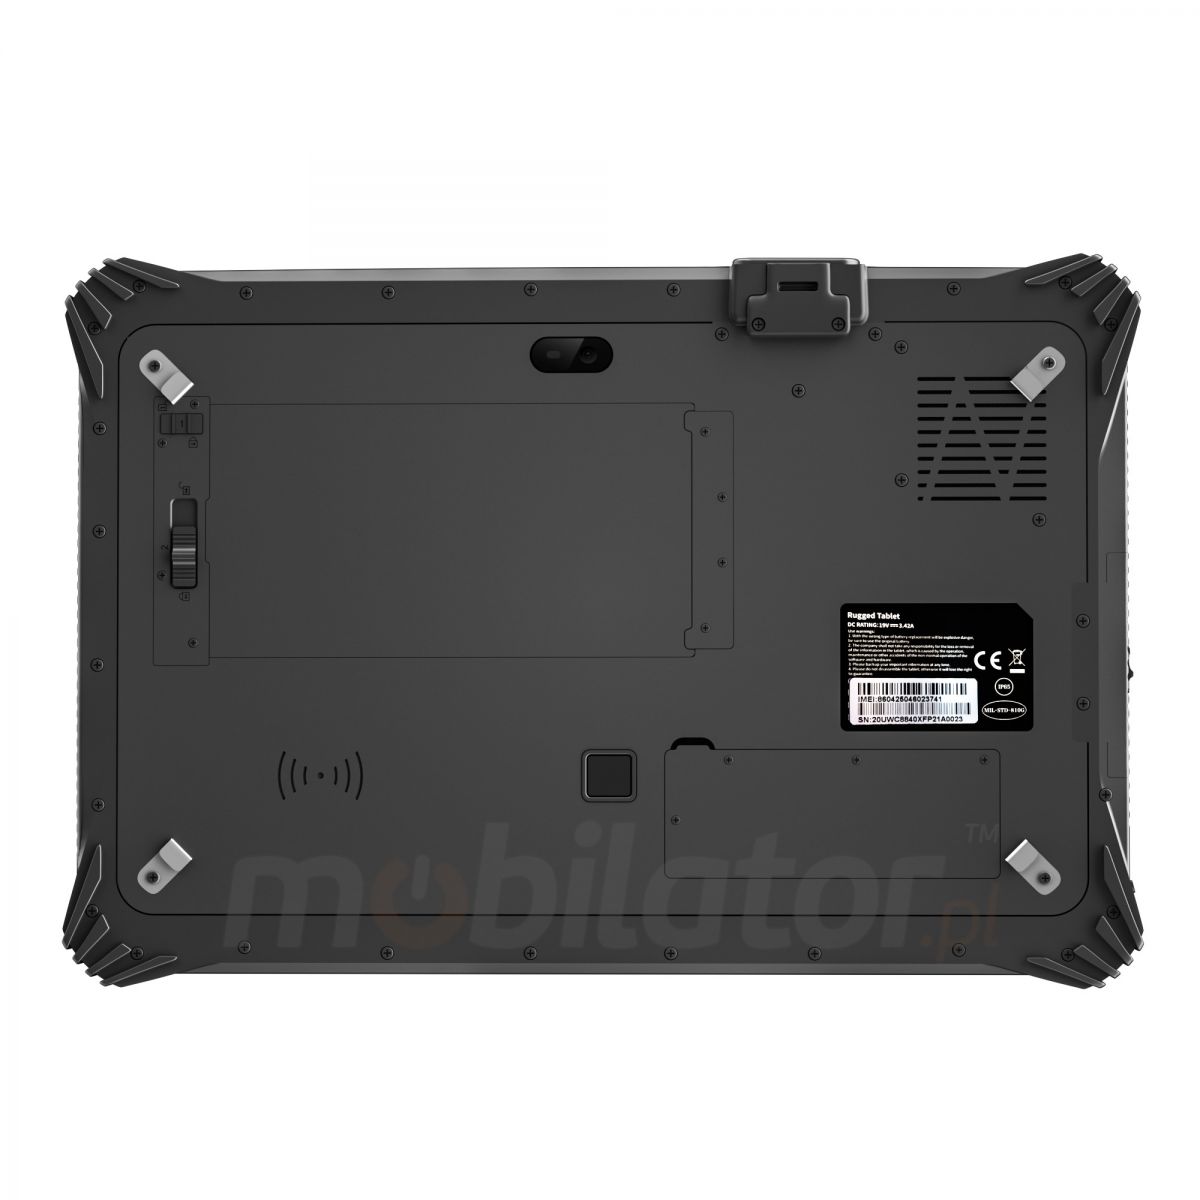 Emdoor I20U v.10 - Dustproof 12.2 inch tablet with Windows 10 IoT, BT 4.2, AR Film, 1D MOTO SE655 code reader, NFC, 4G, 8GB RAM and 128GB ROM 